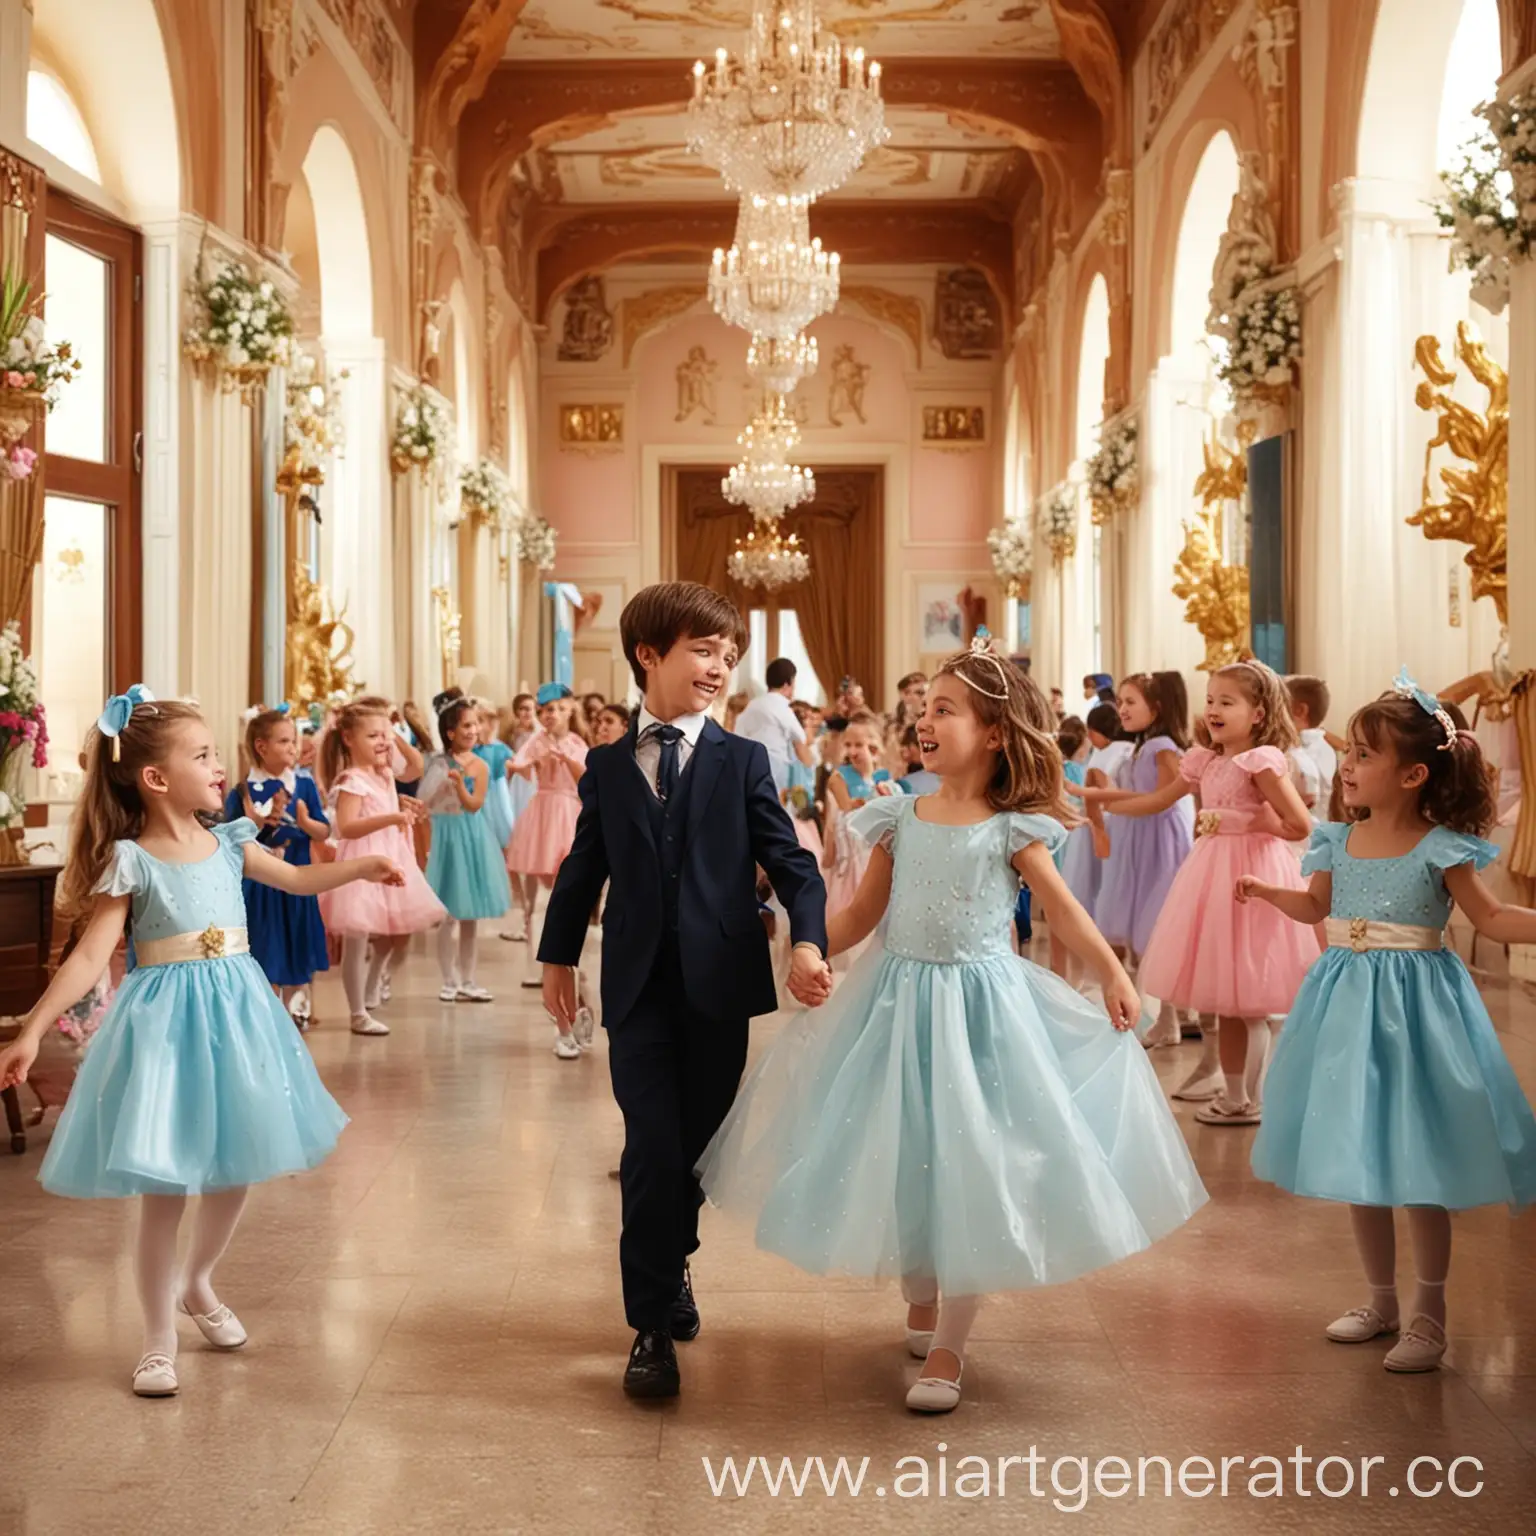 выпускной в детском саду девочки танцуют с мальчиками девочки в пышных платьях в украшенном зале